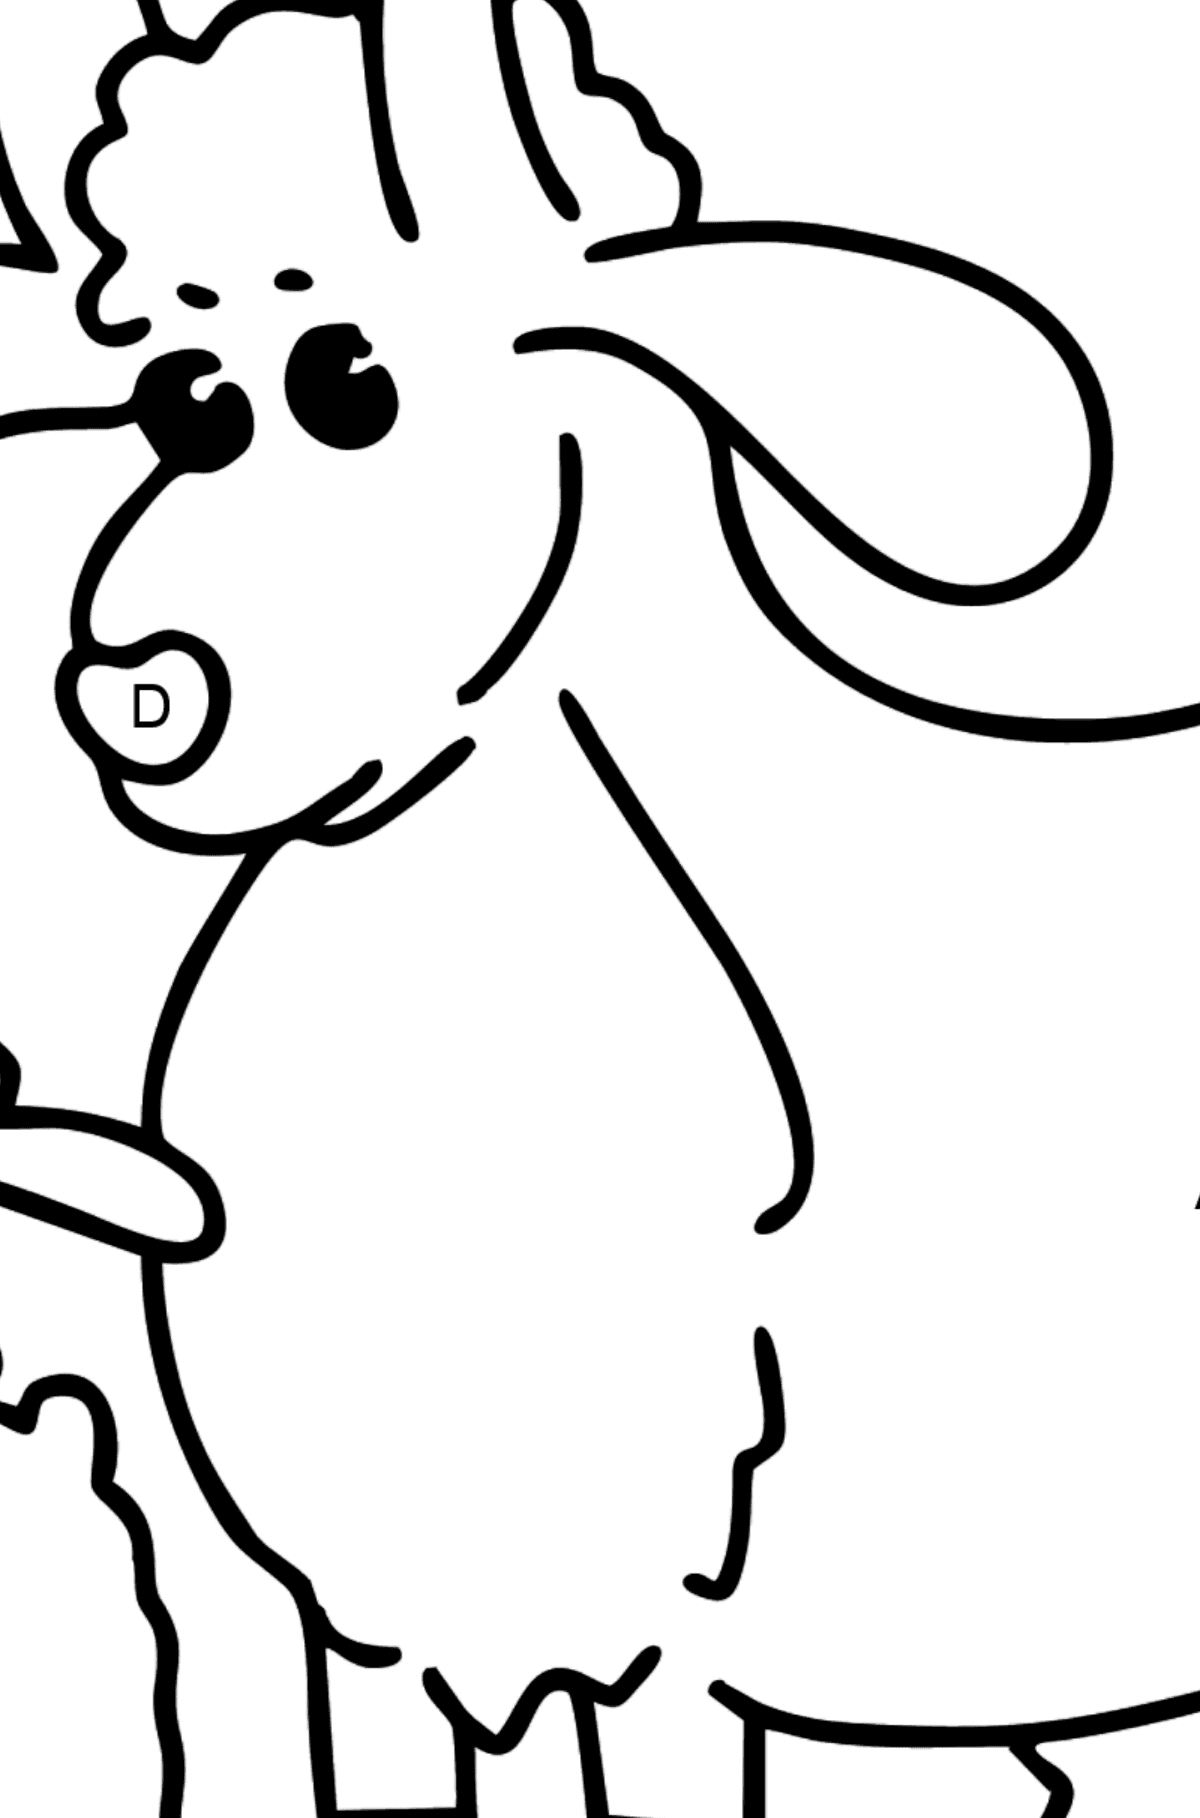 Dibujo de Cabra y cabrito para colorear - Colorear por Letras para Niños